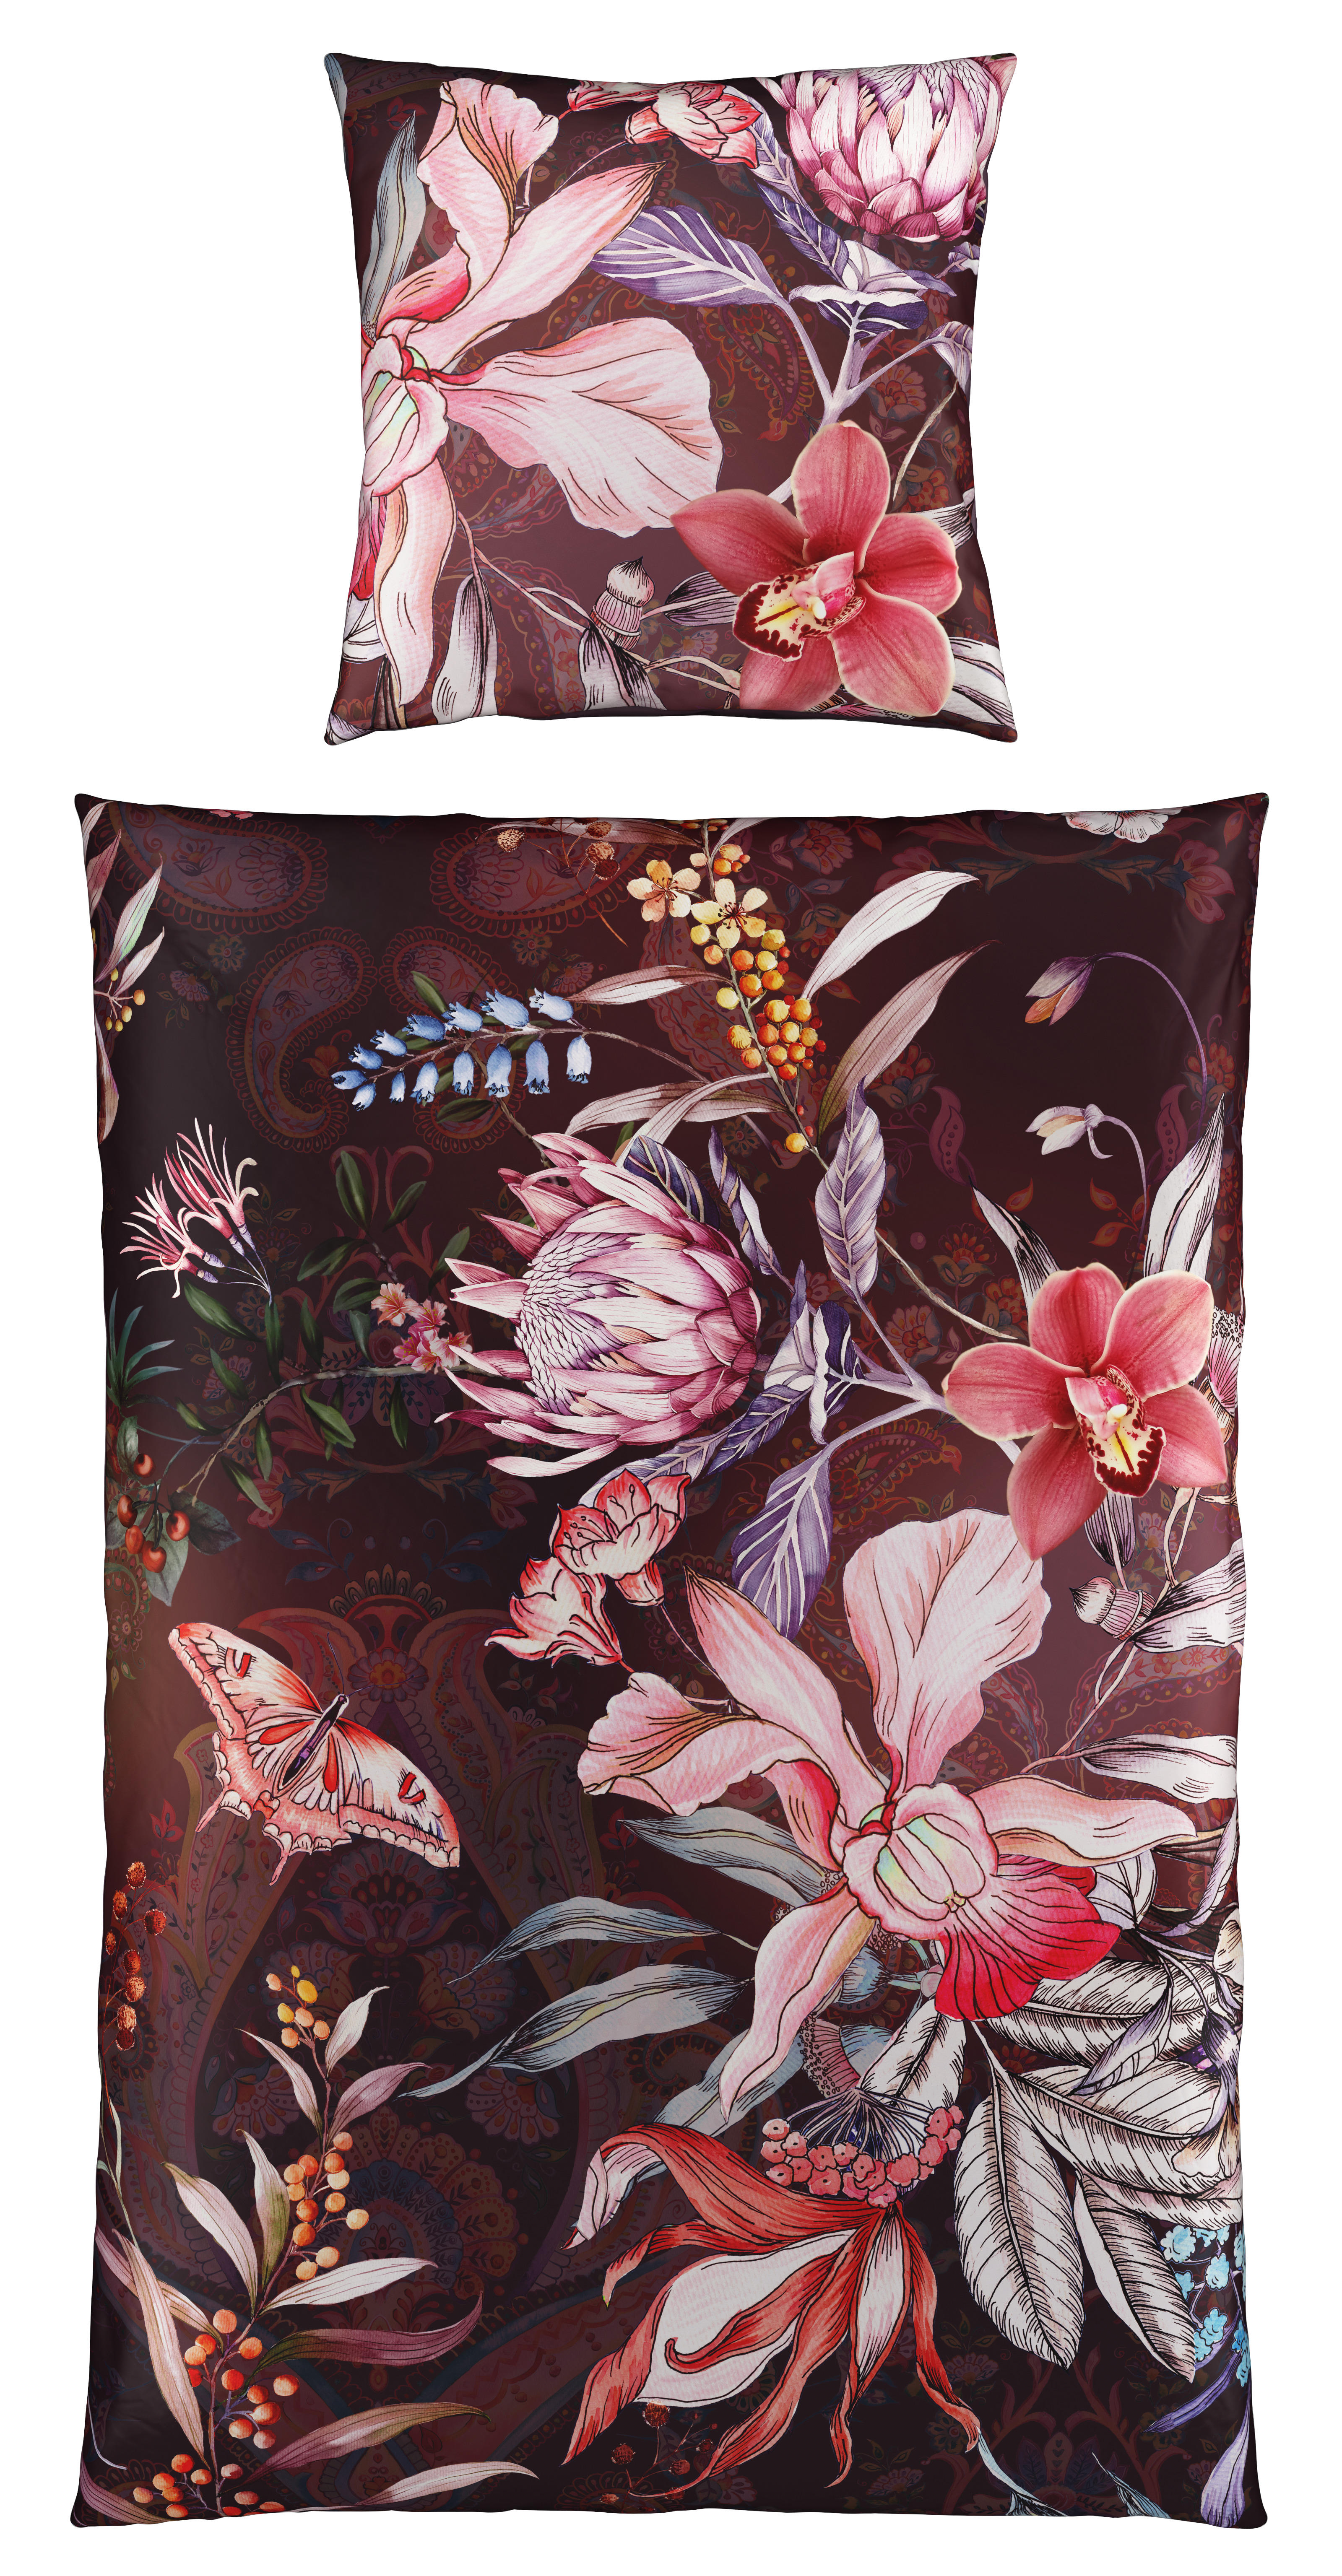 WENDEBETTWÄSCHE Botanica Satin  - Multicolor, KONVENTIONELL, Textil (135/200cm) - Esposa